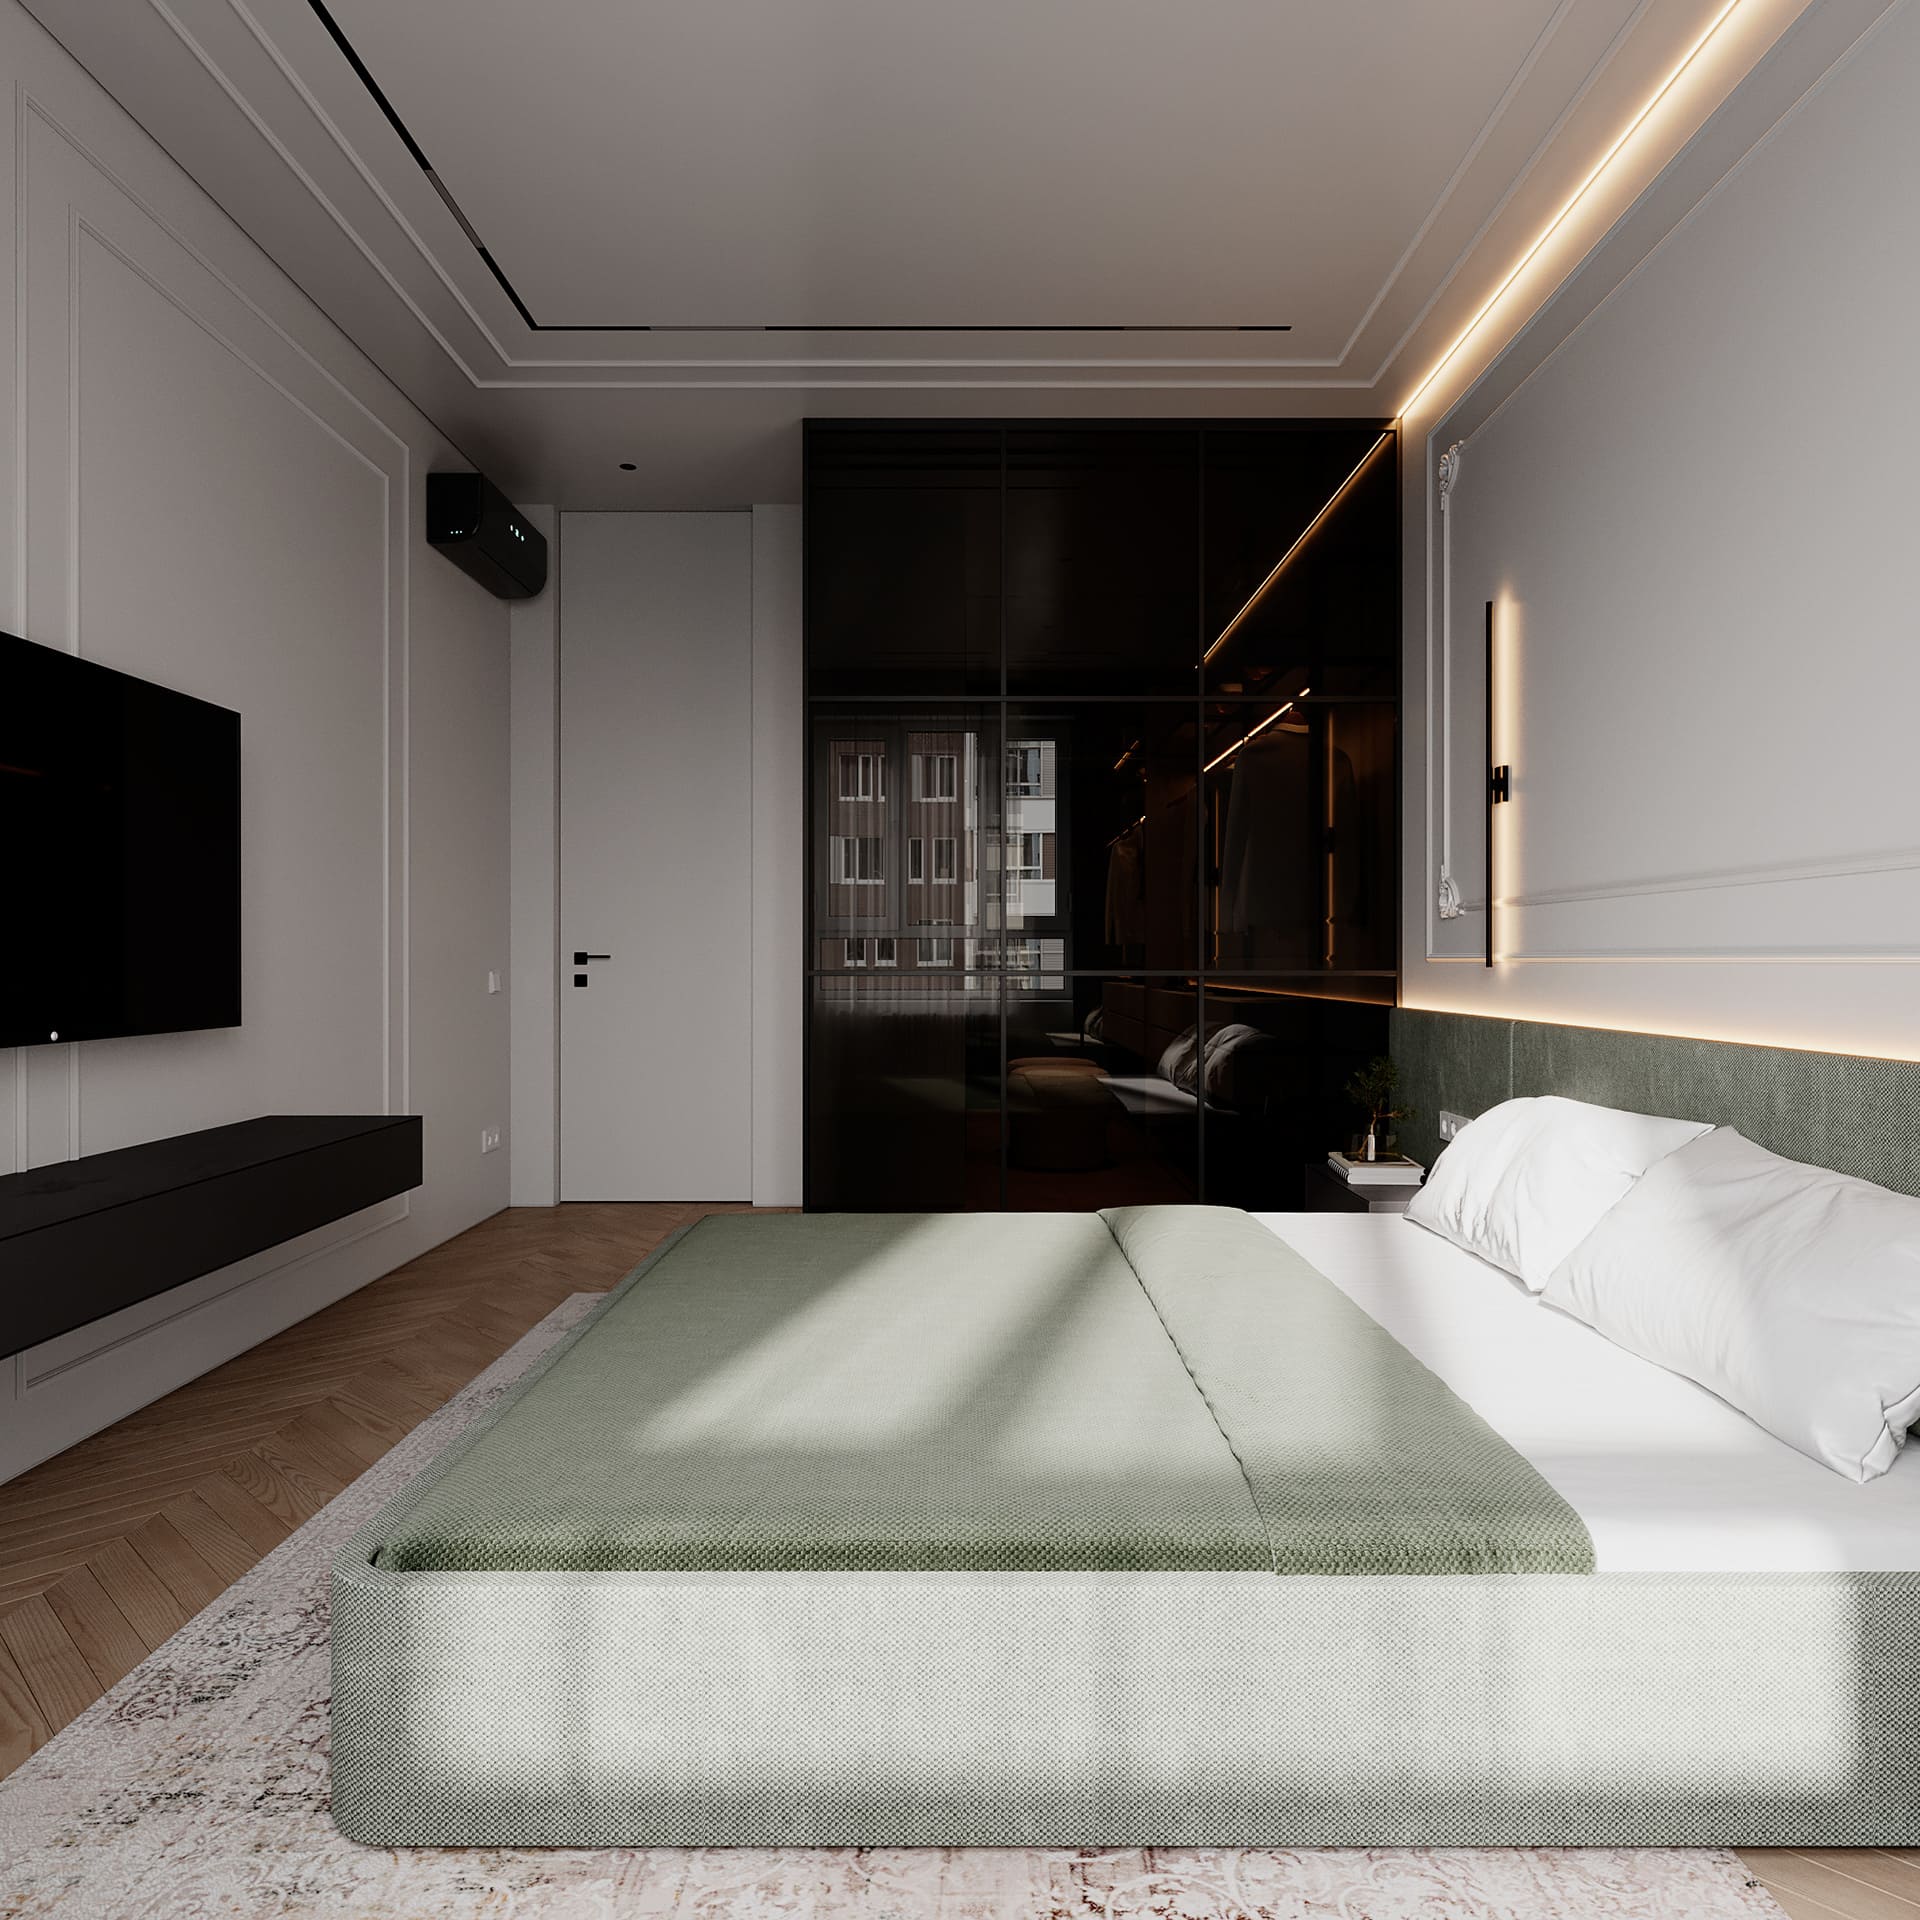 Престижная светлая квартира в стиле минимализм, спальня, фото 50